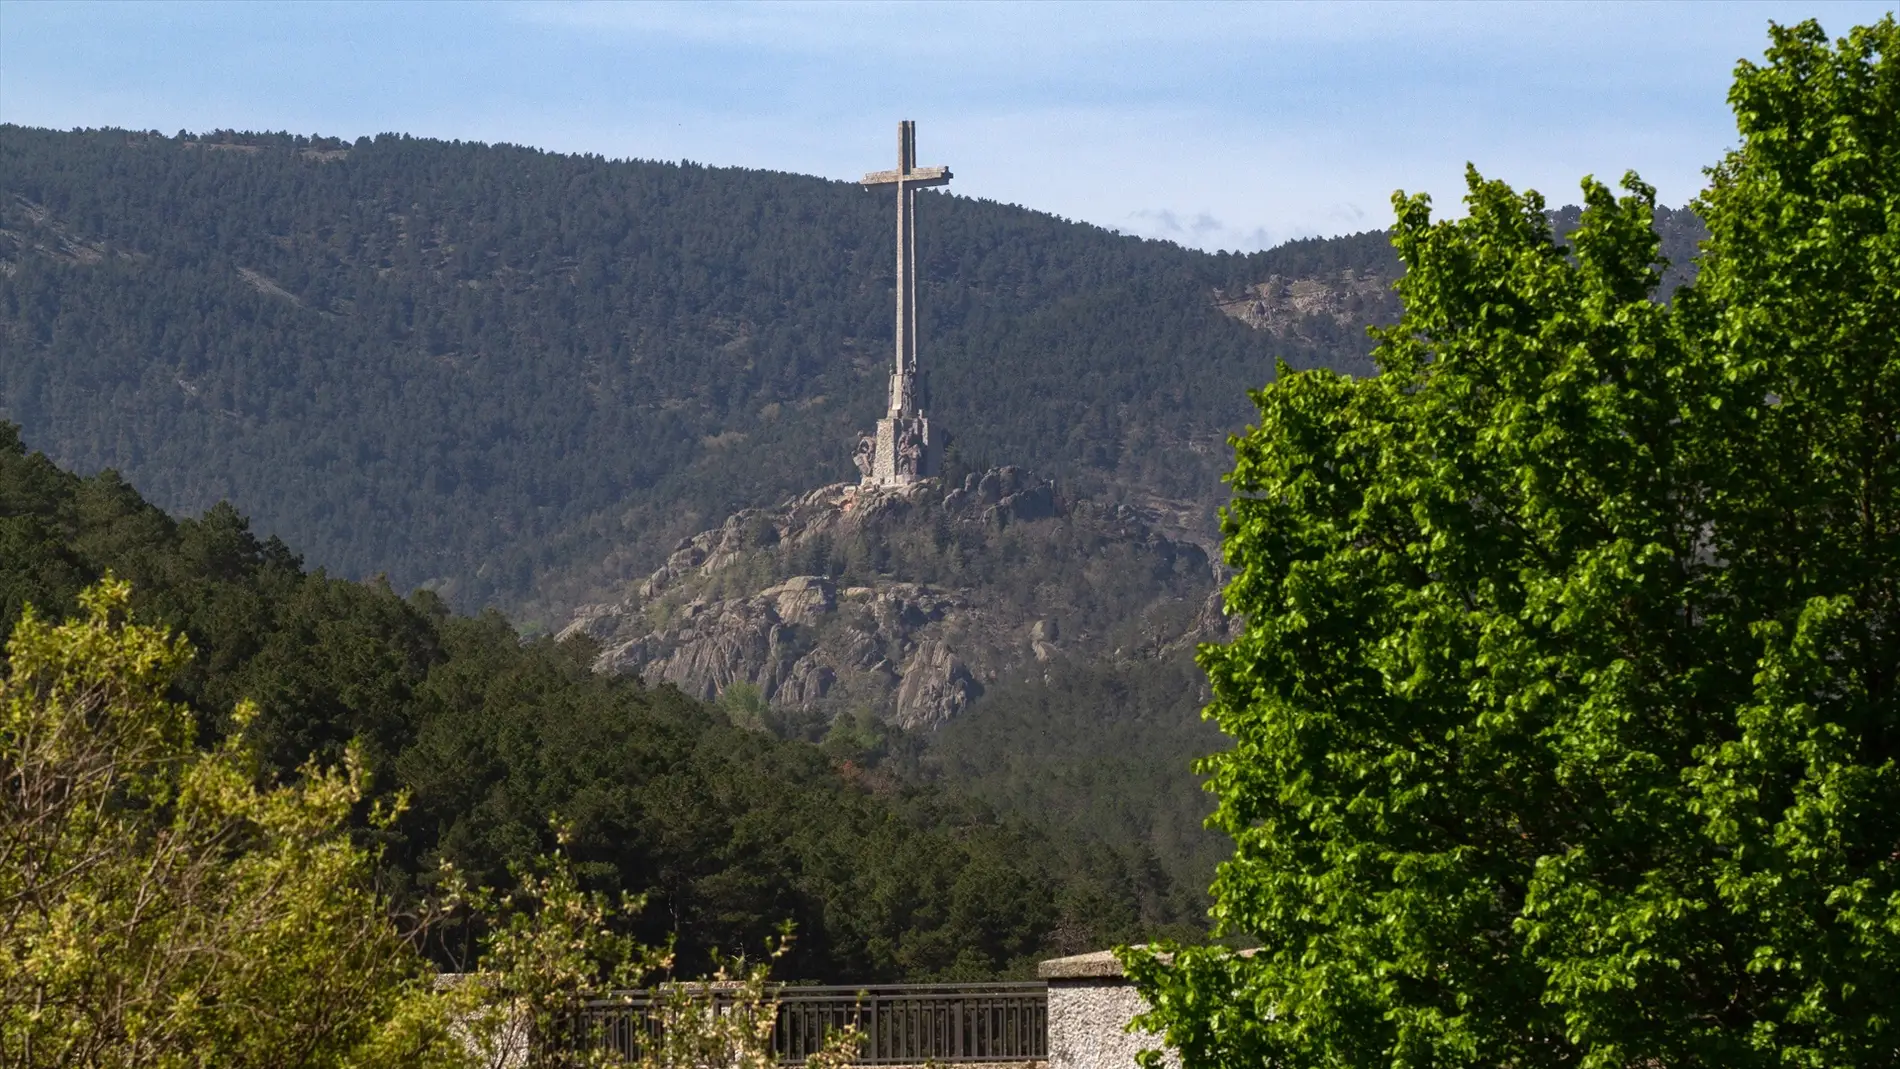 La cruz del Valle de Cuelgamuros desde el embalse de La Jarosa, en Guadarrama, Madrid